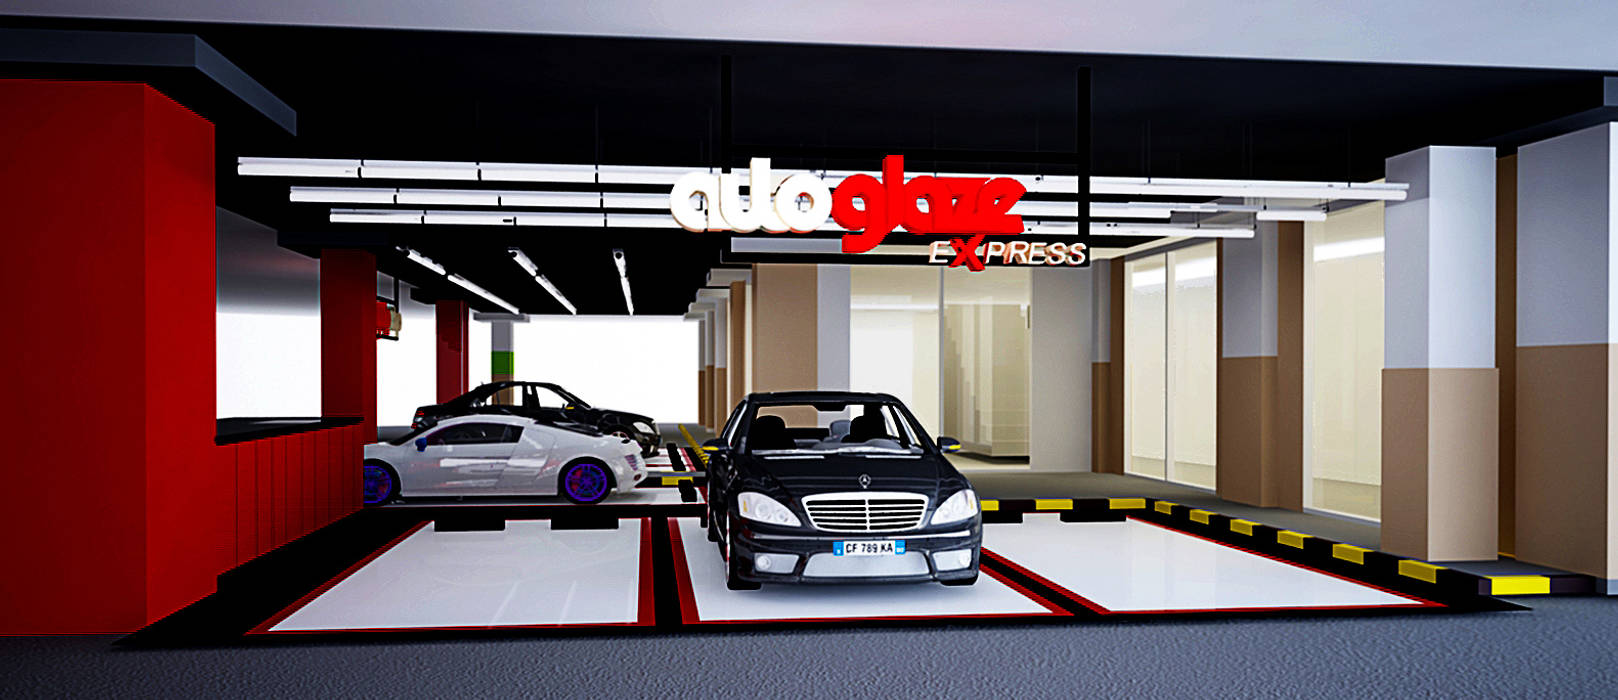 Autoglaze Outlets , Elora Desain Elora Desain Commercial spaces Car Dealerships